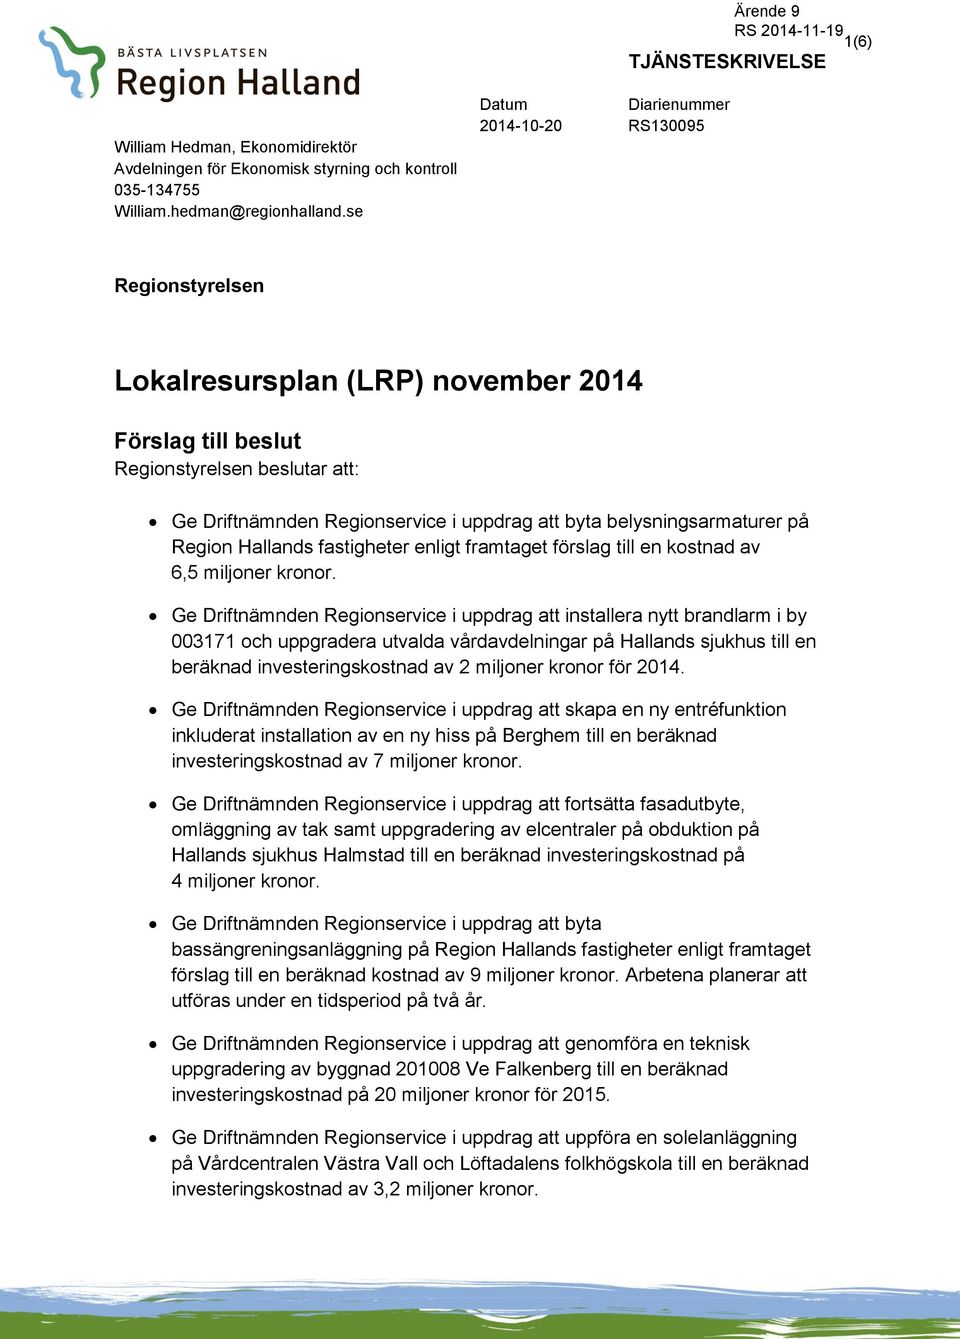 belysningsarmaturer på Region Hallands fastigheter enligt framtaget förslag till en kostnad av 6,5 miljoner kronor.